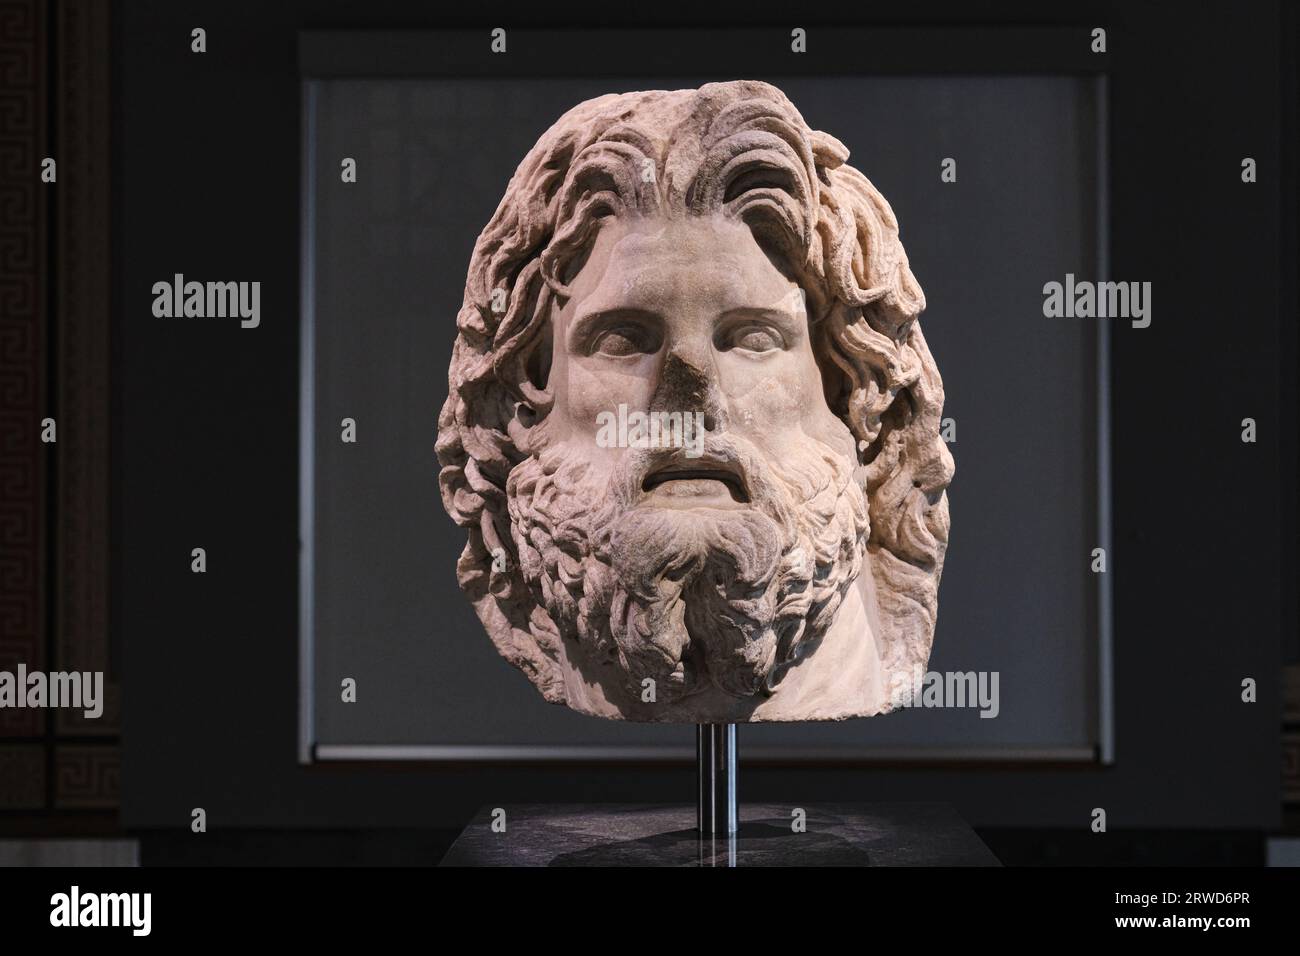 Istanbul, Turquie - septembre 16 2023 : statue de marbre de la tête de Zeus dans les musées archéologiques d'Istanbul. Dates du 3e au 2e siècles avant notre ère trouvées à Troie Banque D'Images